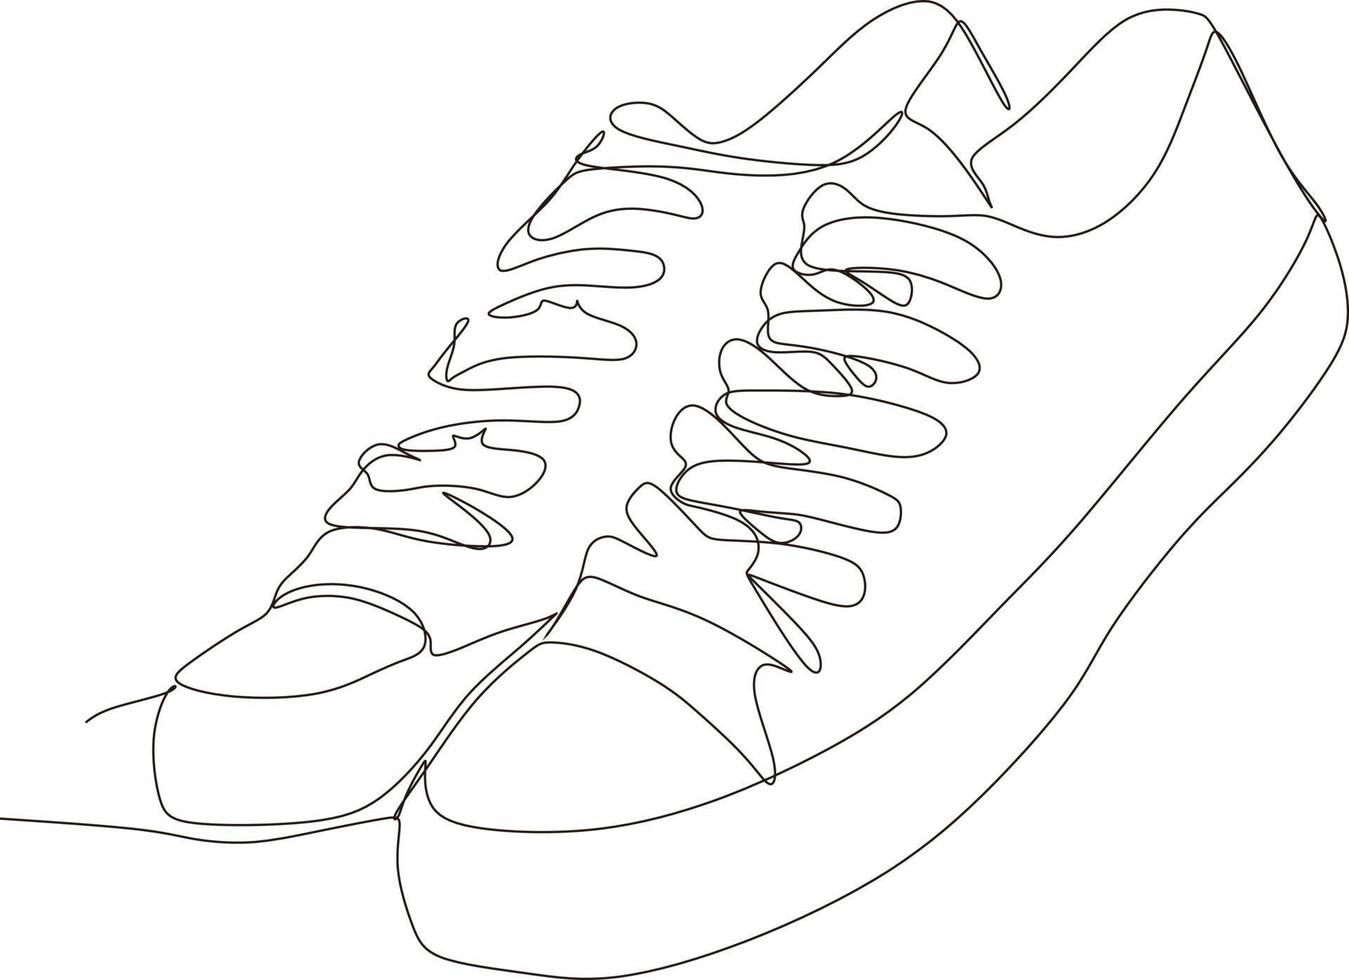 kontinuerlig linje svart och vit sko konst teckning vektor